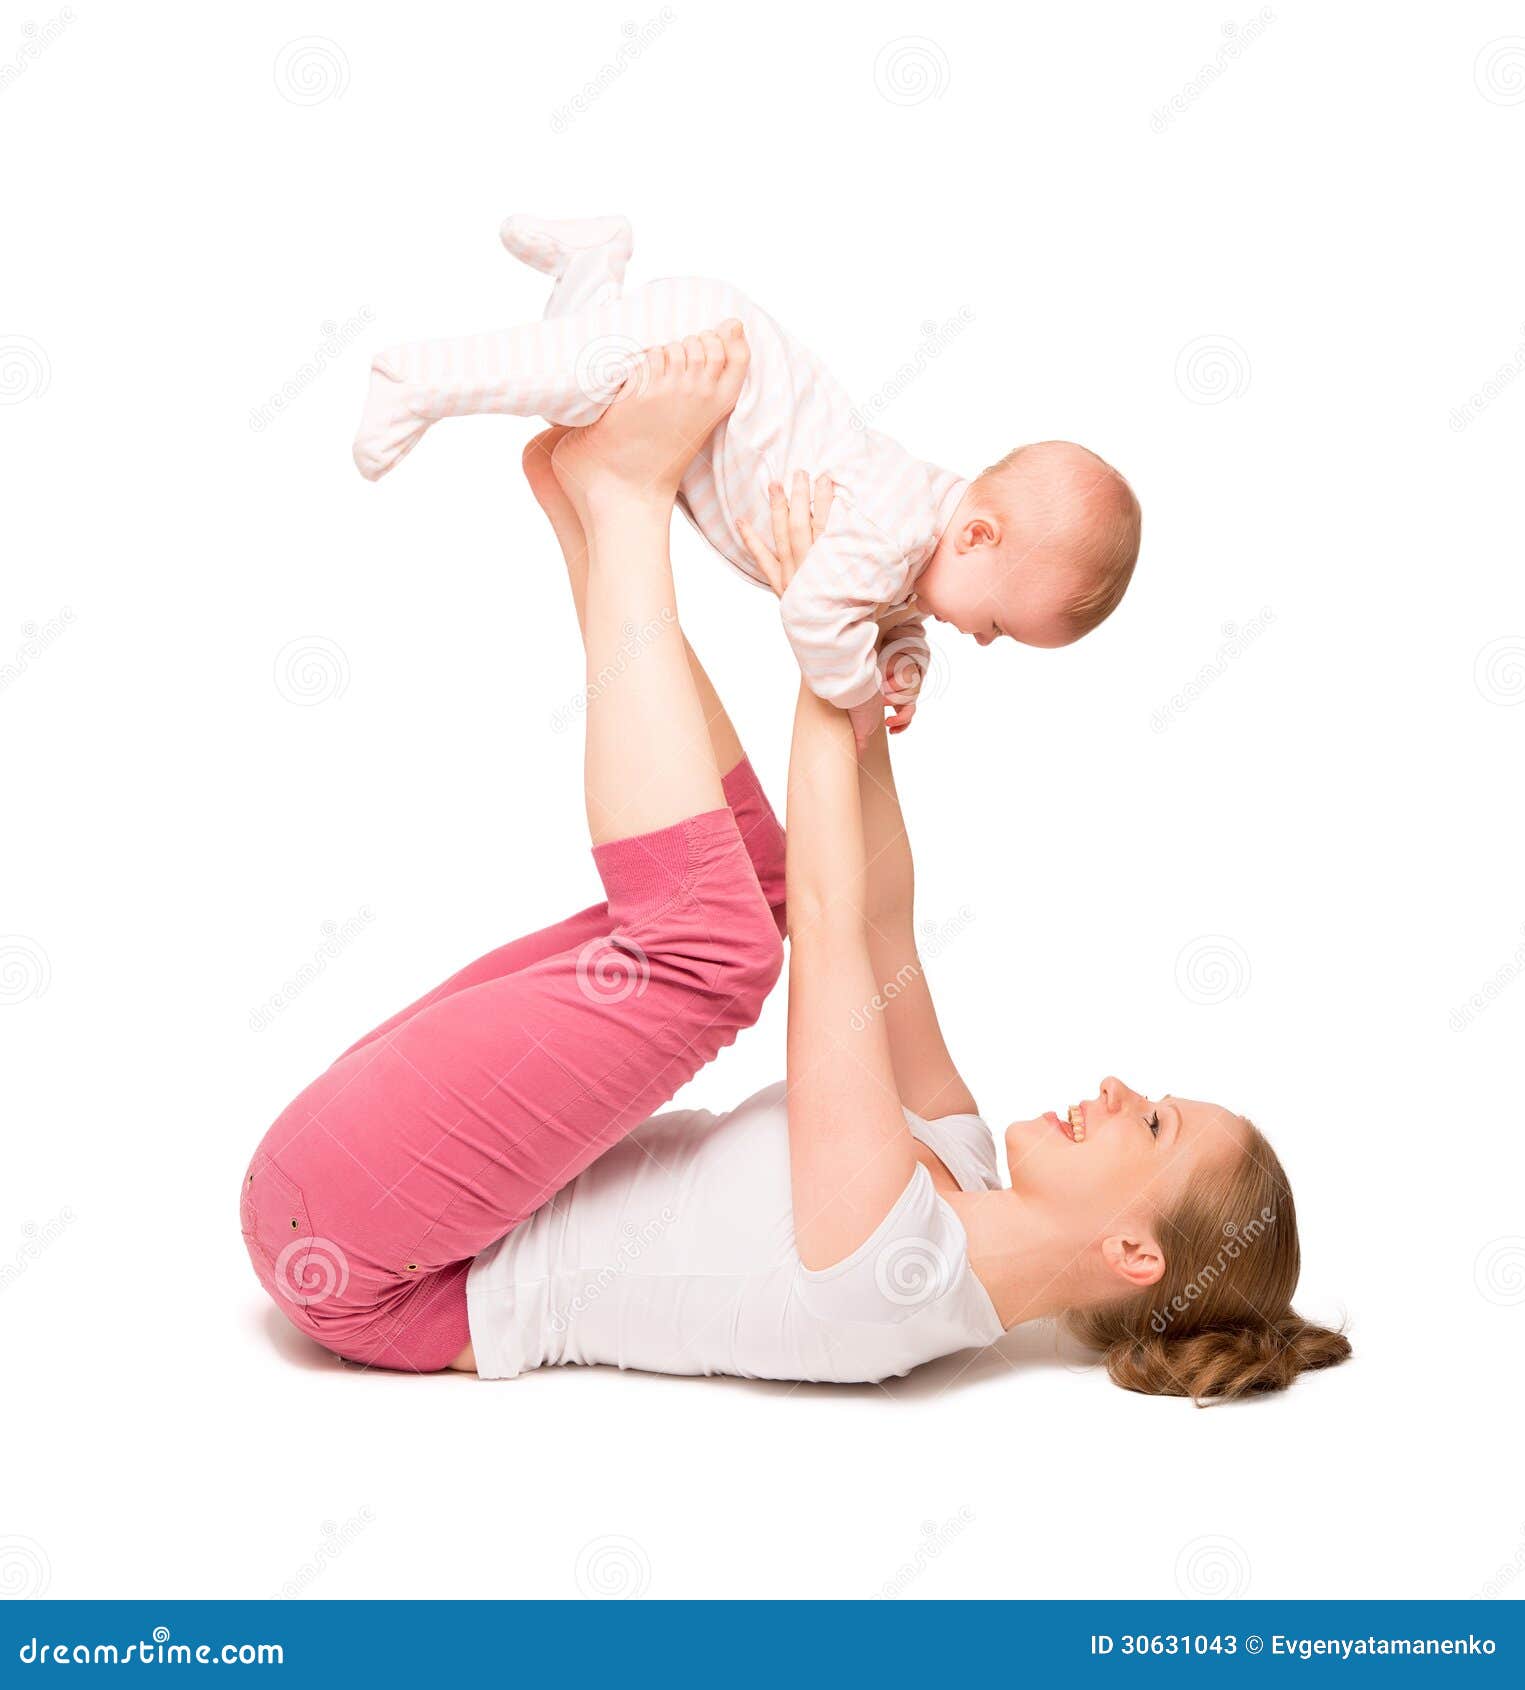 Moms, babies find zen at baby yoga